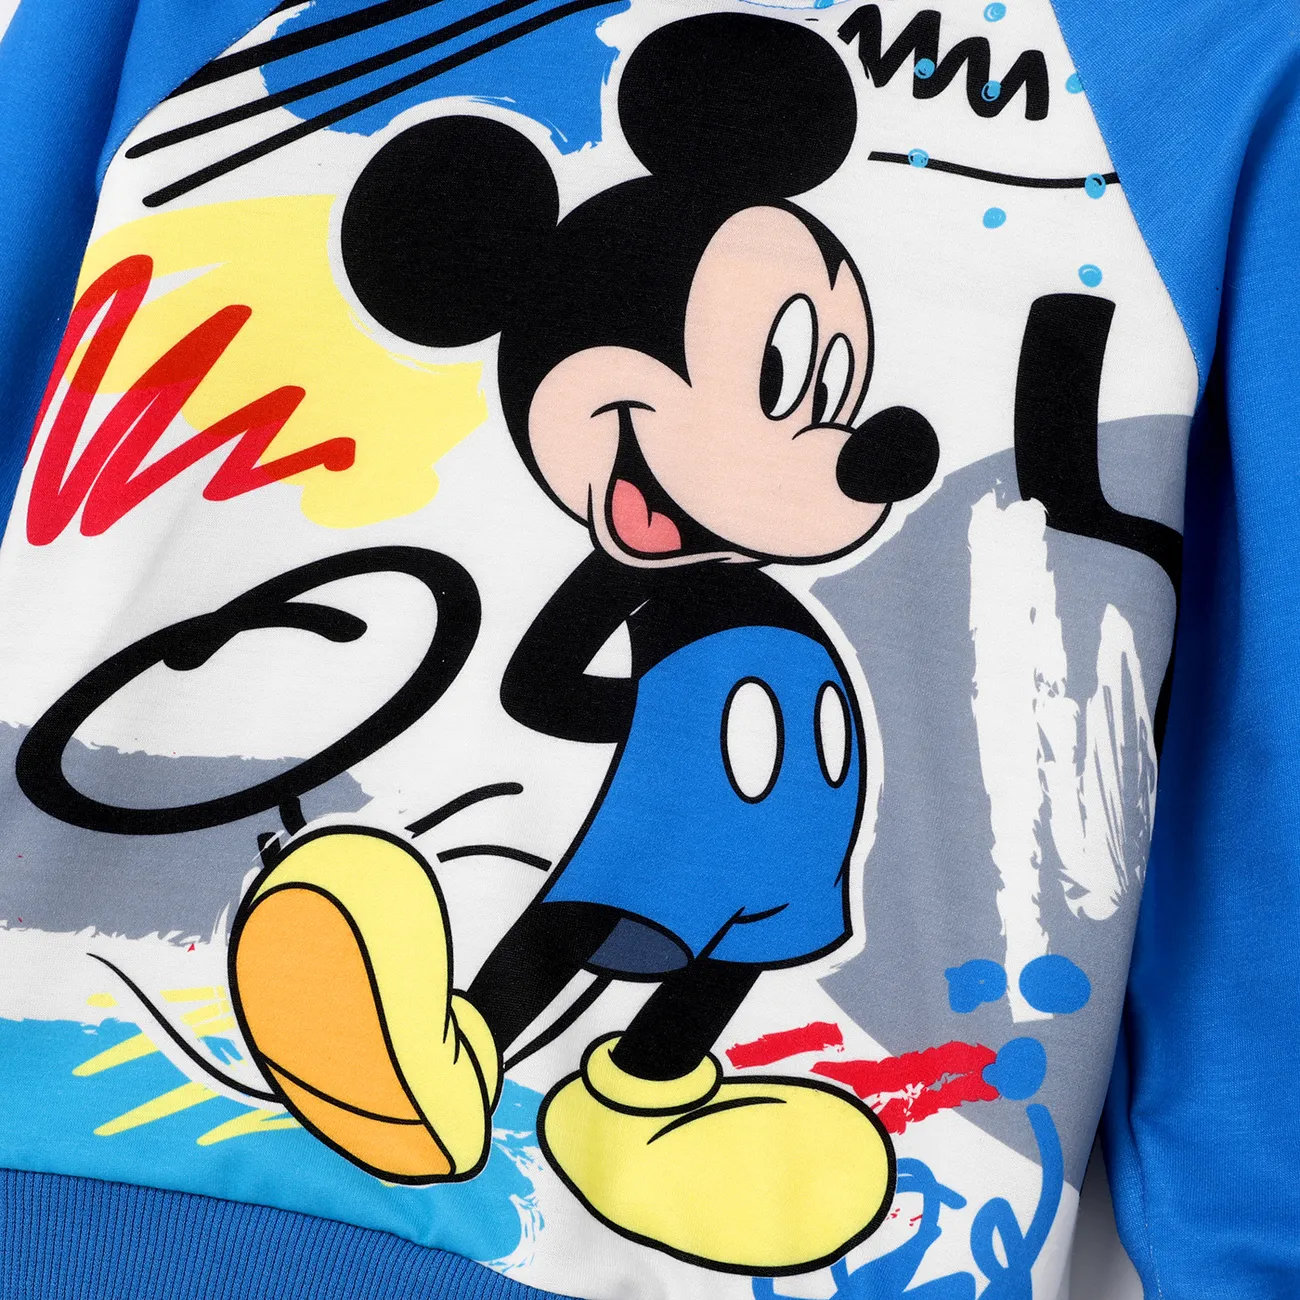 Disney Mickey and Friends 2 unidades Niño pequeño Chico Con capucha Infantil conjuntos de sudadera Azul big image 1